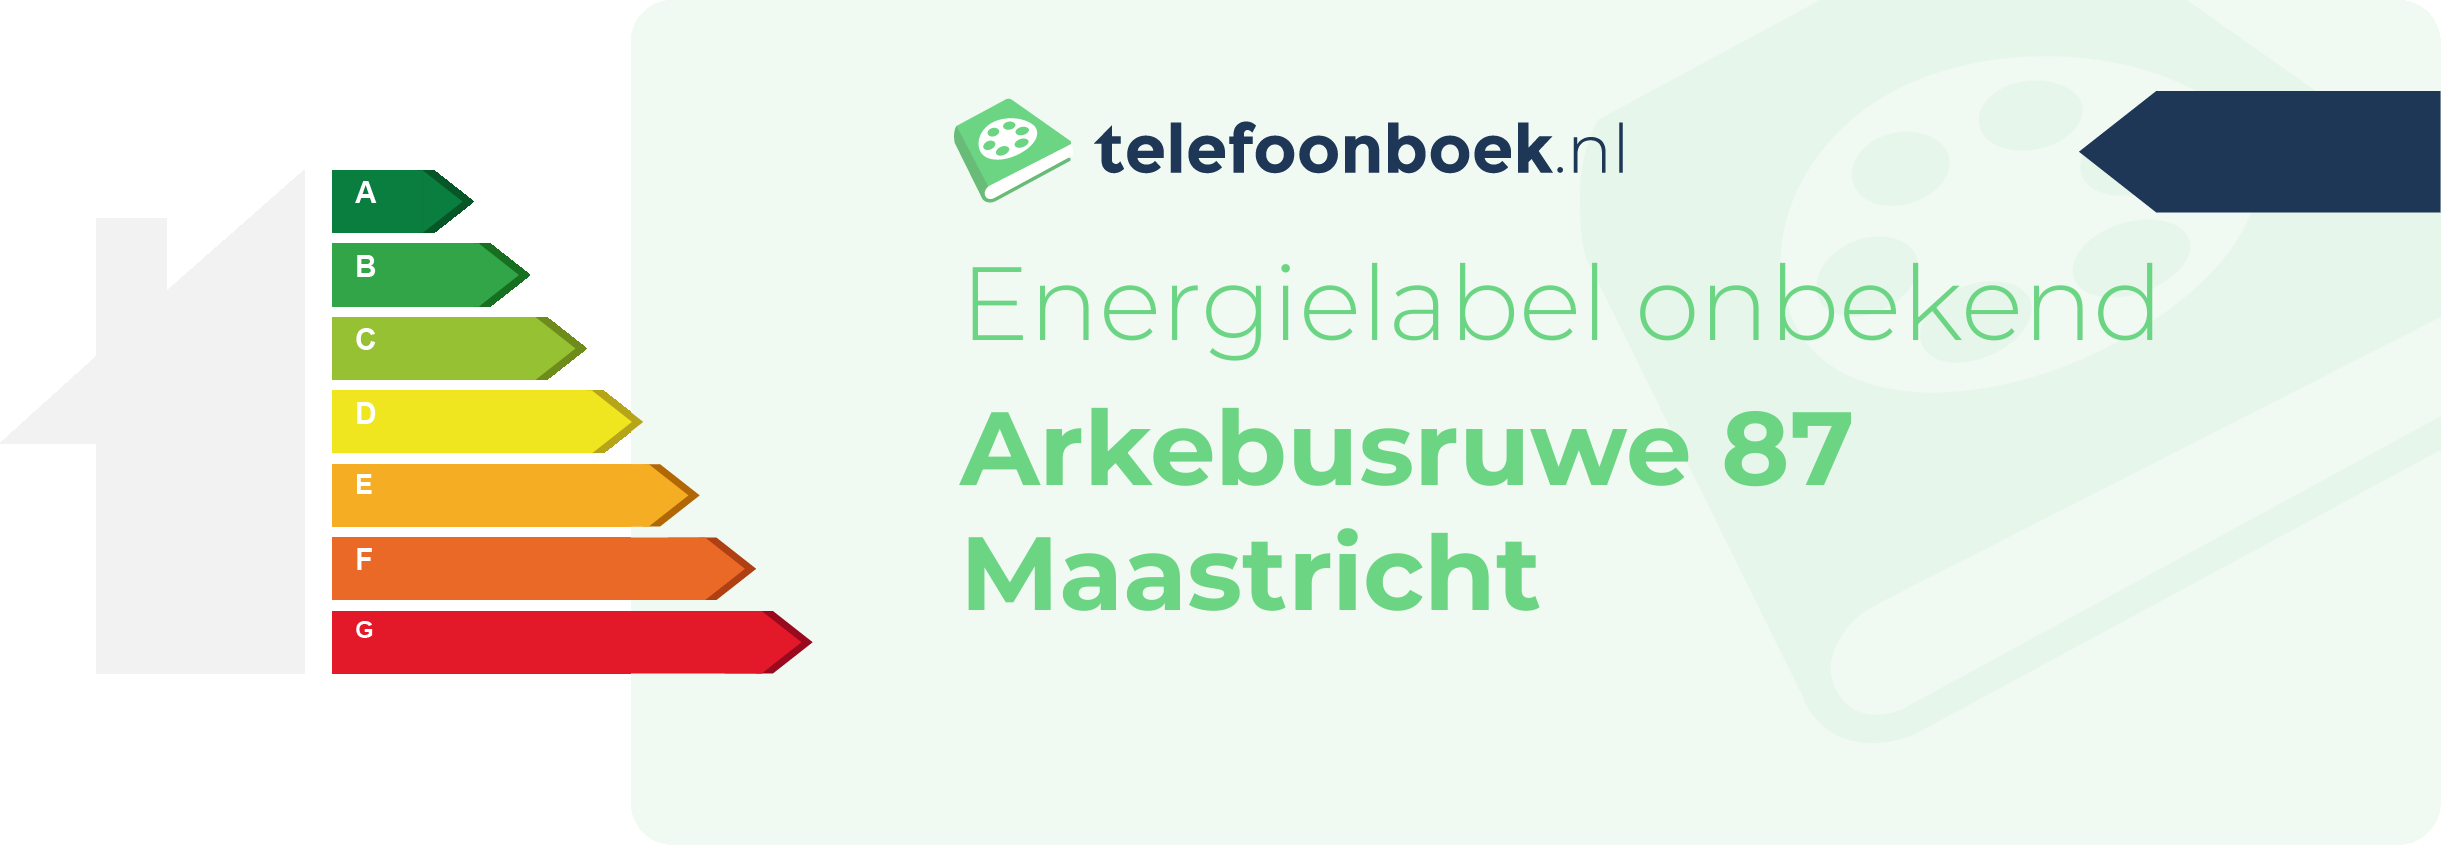 Energielabel Arkebusruwe 87 Maastricht